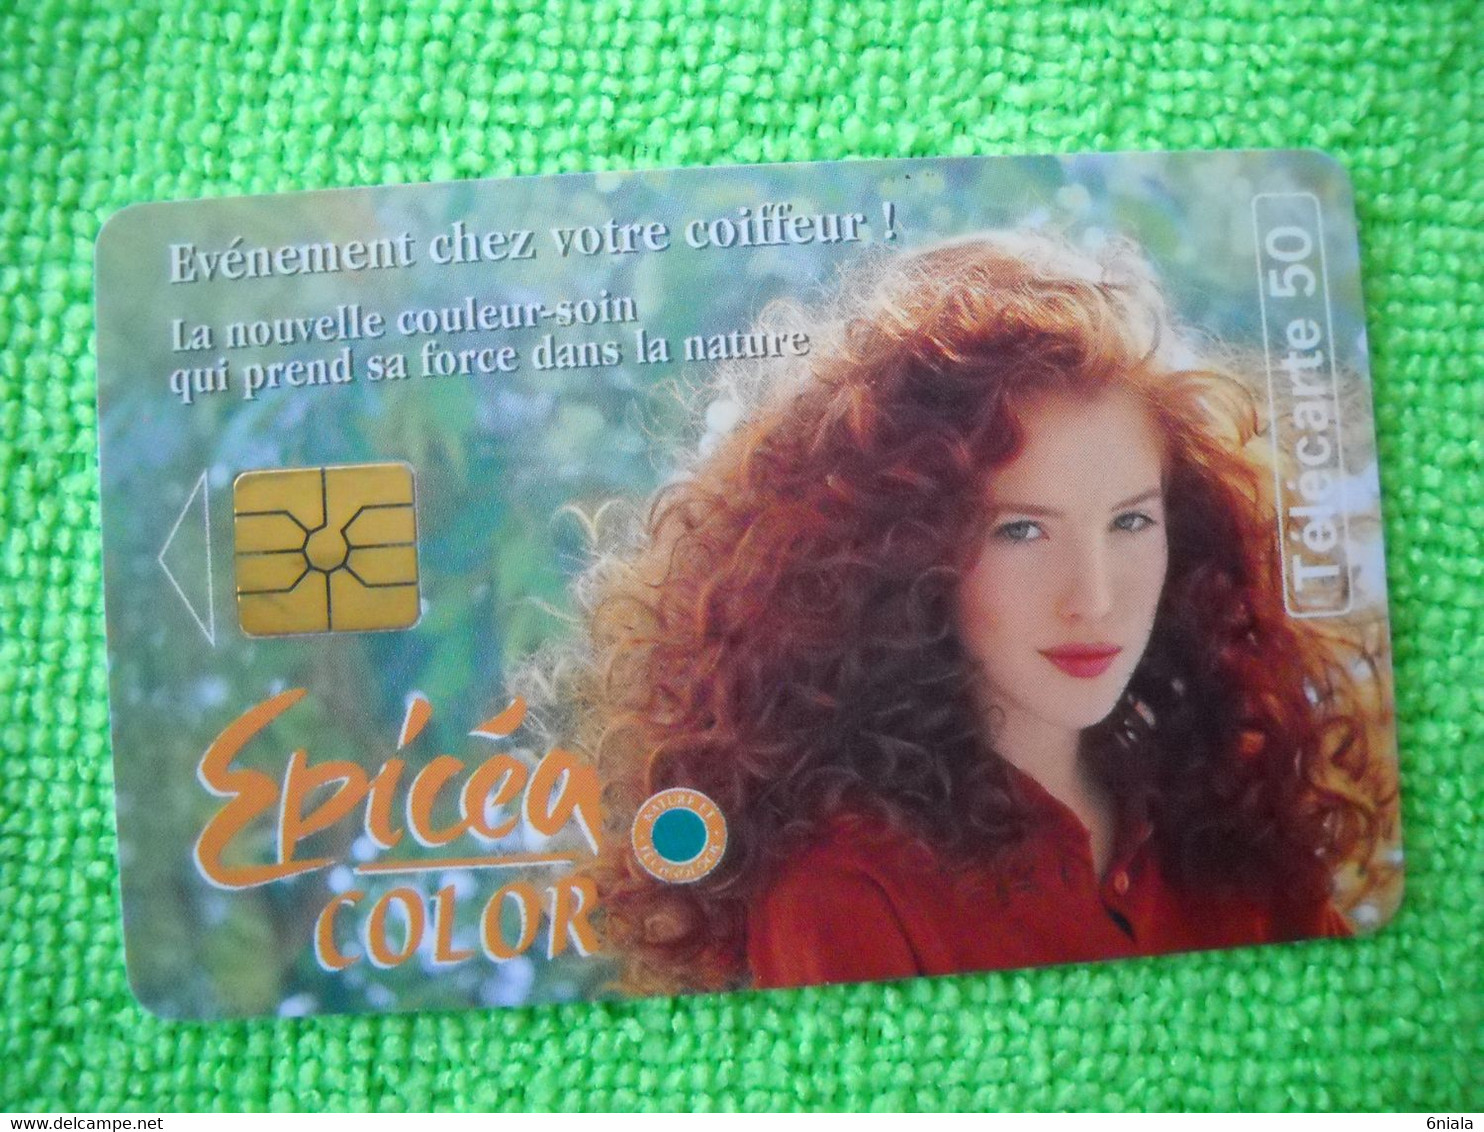 7110 Télécarte Collection EPICEA COLOR  Coloration Cheveux Shampoing     50u  ( Recto Verso)  Carte Téléphonique - Publicité